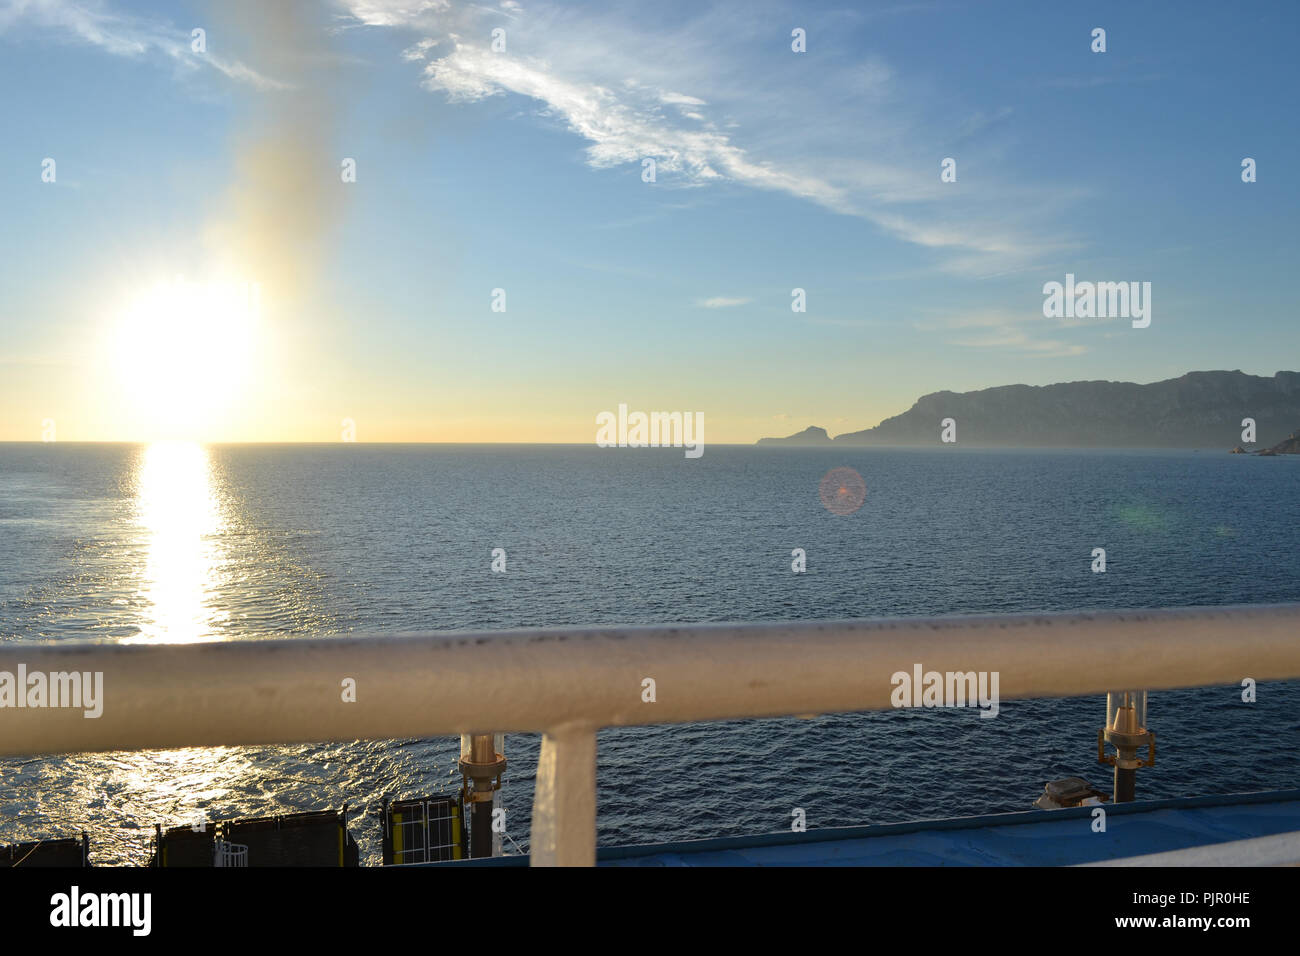 Nave da crociera in arrivo al porto di Olbia, Sardegna, scena di mattina Foto Stock